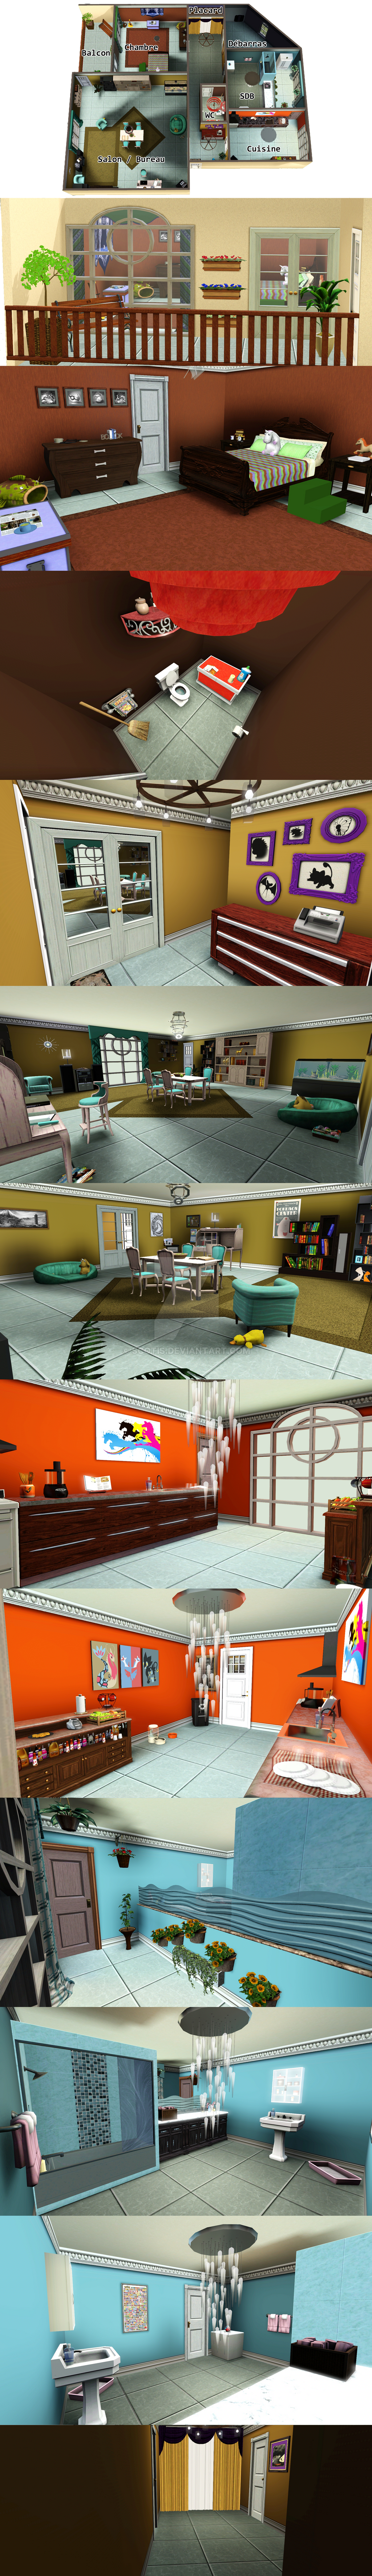 Appartement réalisée sur le jeu Sims 3